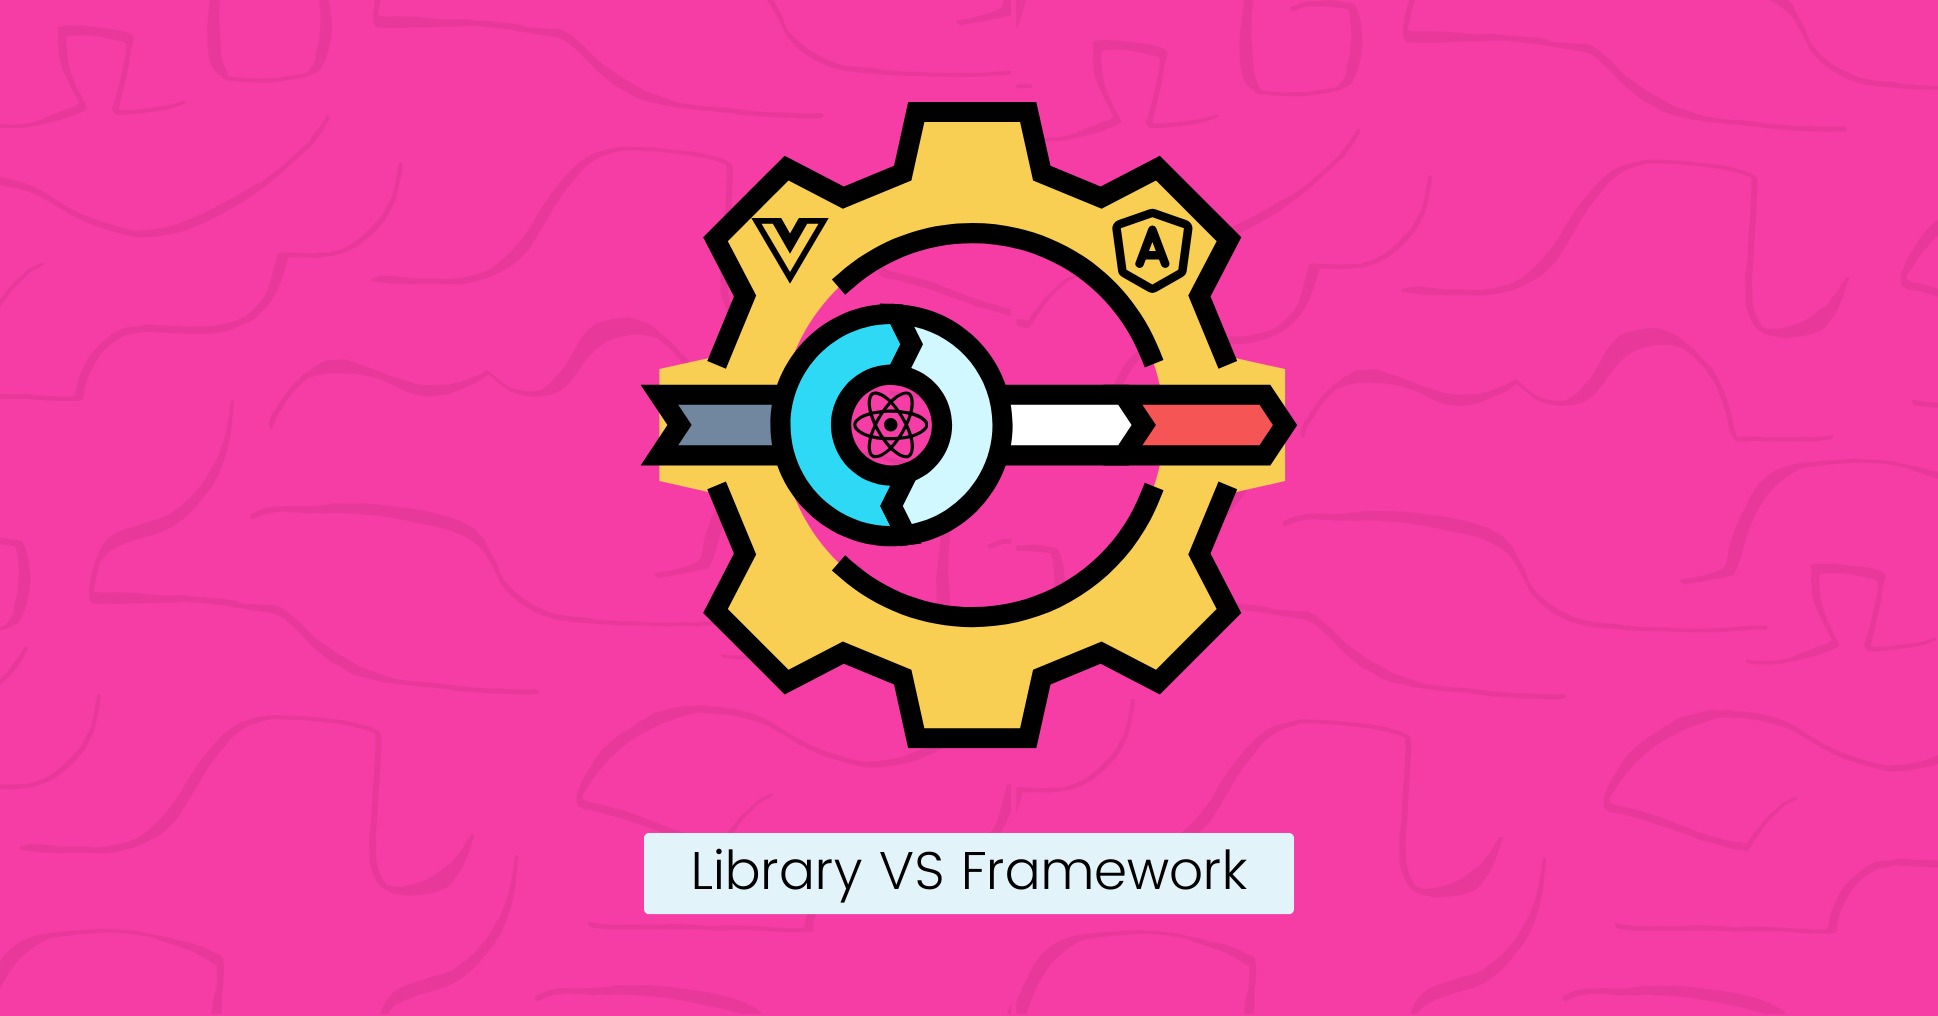 Library VS Framework